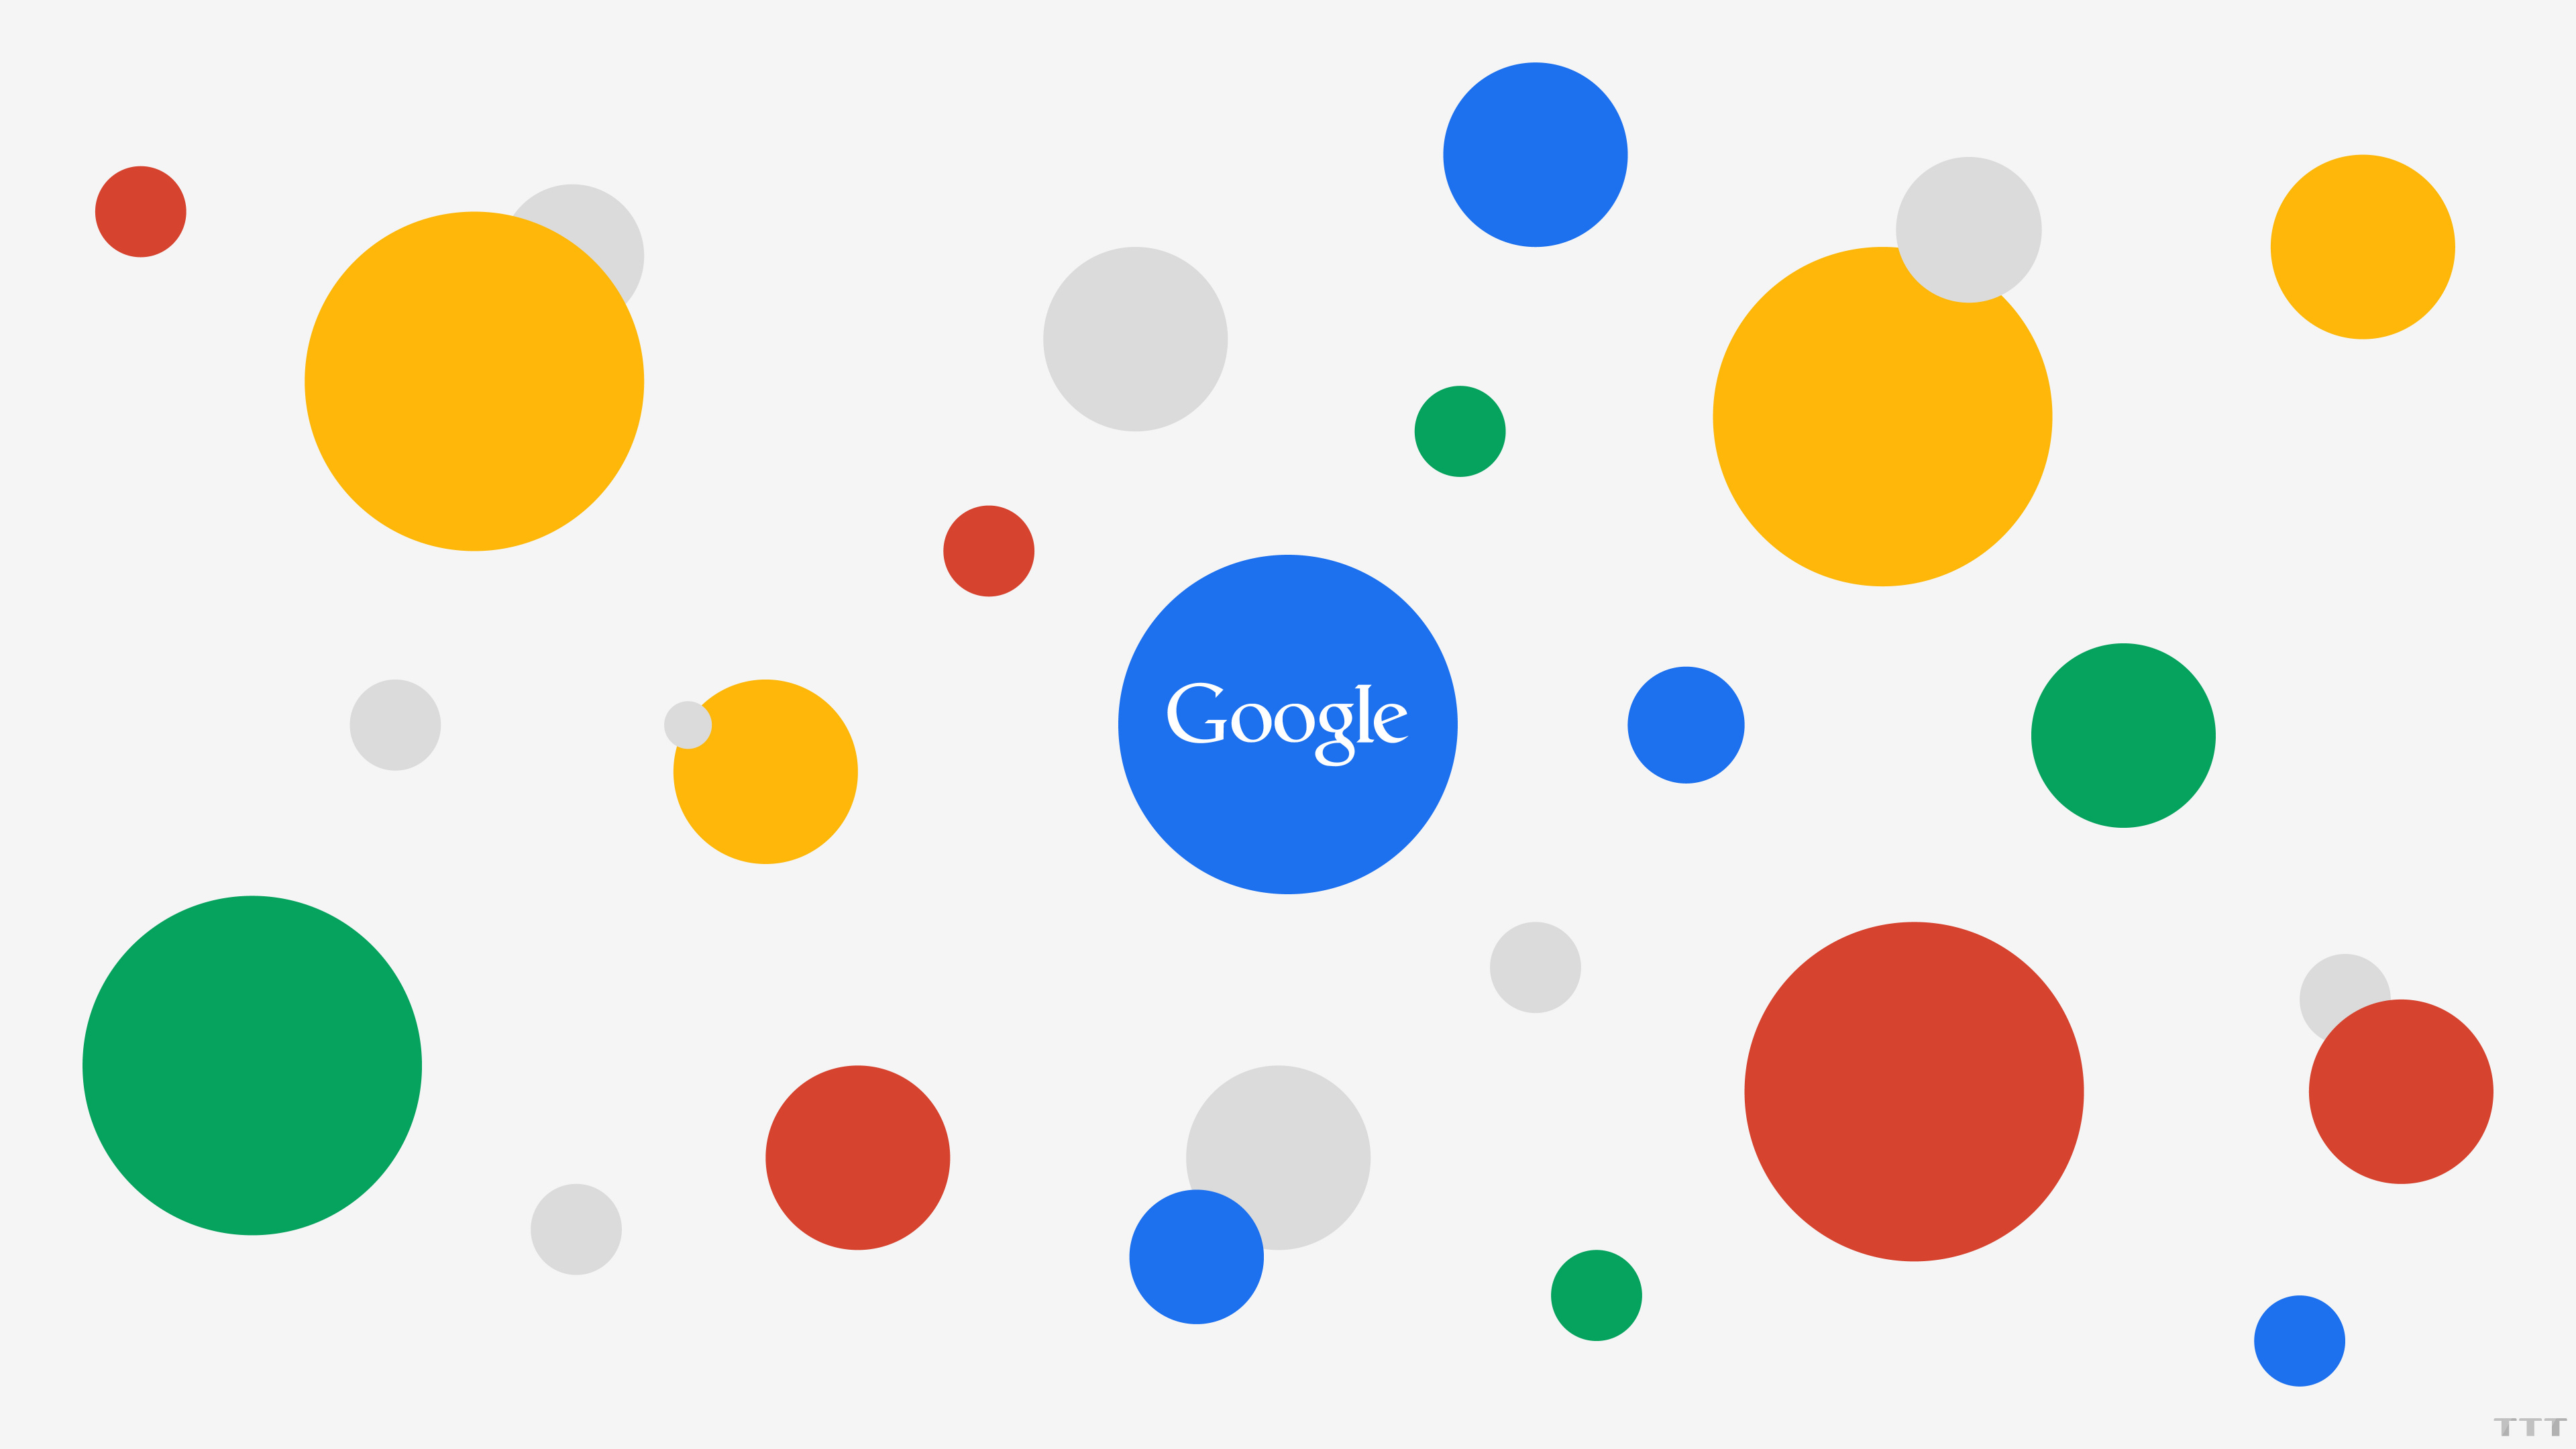 谷歌, 谷歌的广告, 互联网, 黄色的, 圆圈 壁纸 3840x2160 允许